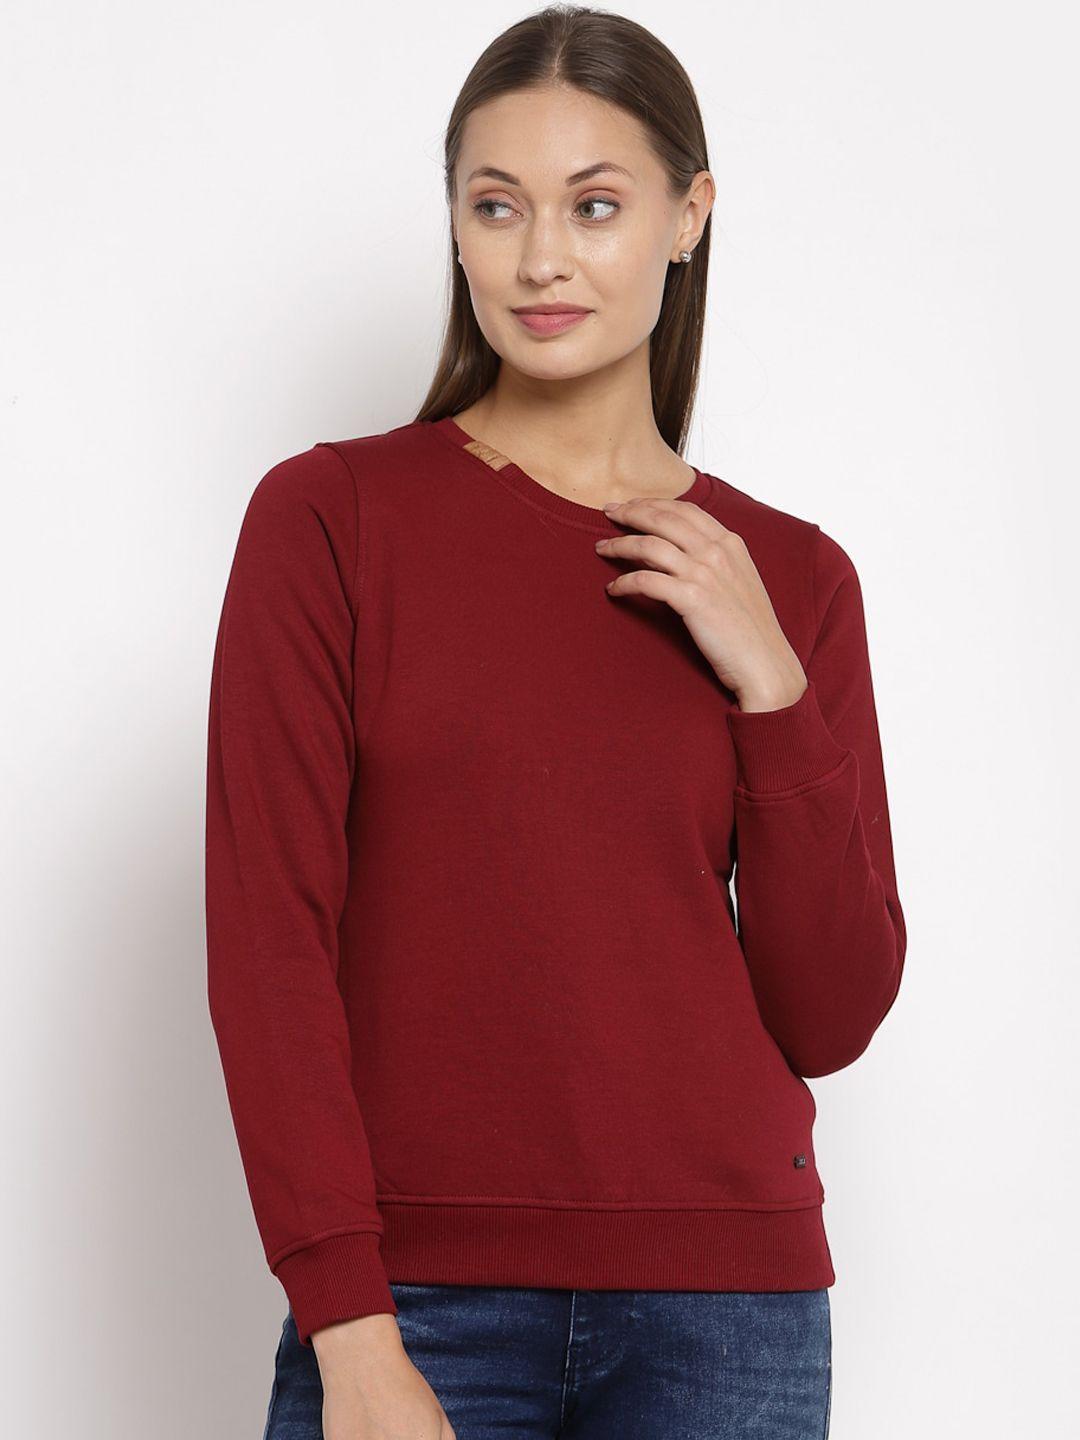 juelle women maroon solid sweatshirt